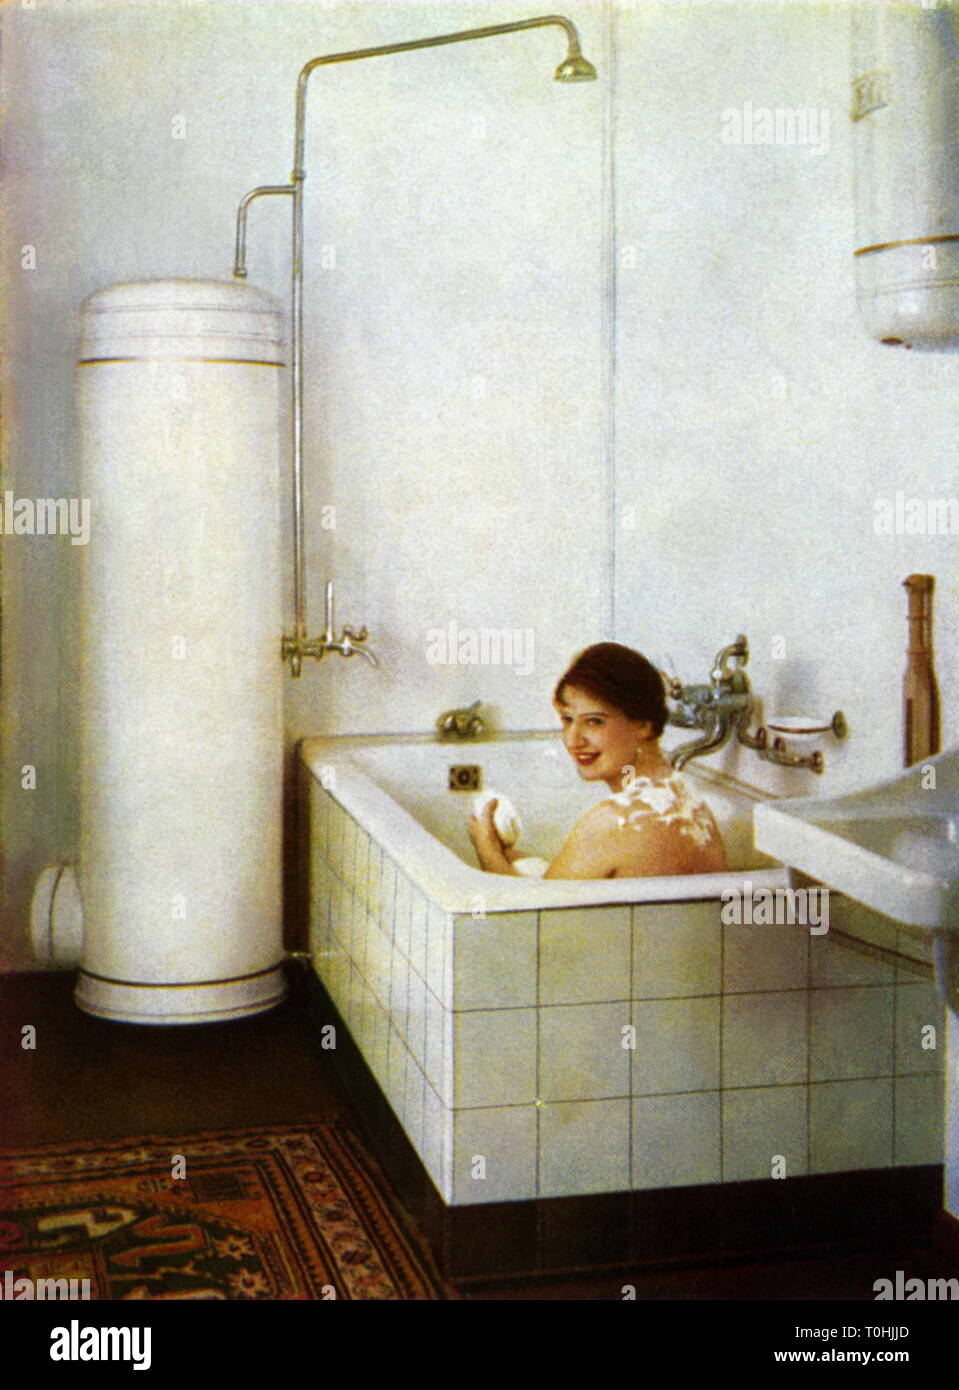 Domestico, riscaldatore acqua sporca dalla AEG e fornitura di acqua calda, starlet e attrice Lantelme Durrer nella vasca da bagno, Cartolina pubblicitaria, Germania, circa 1929, Additional-Rights-Clearance-Info-Not-Available Foto Stock